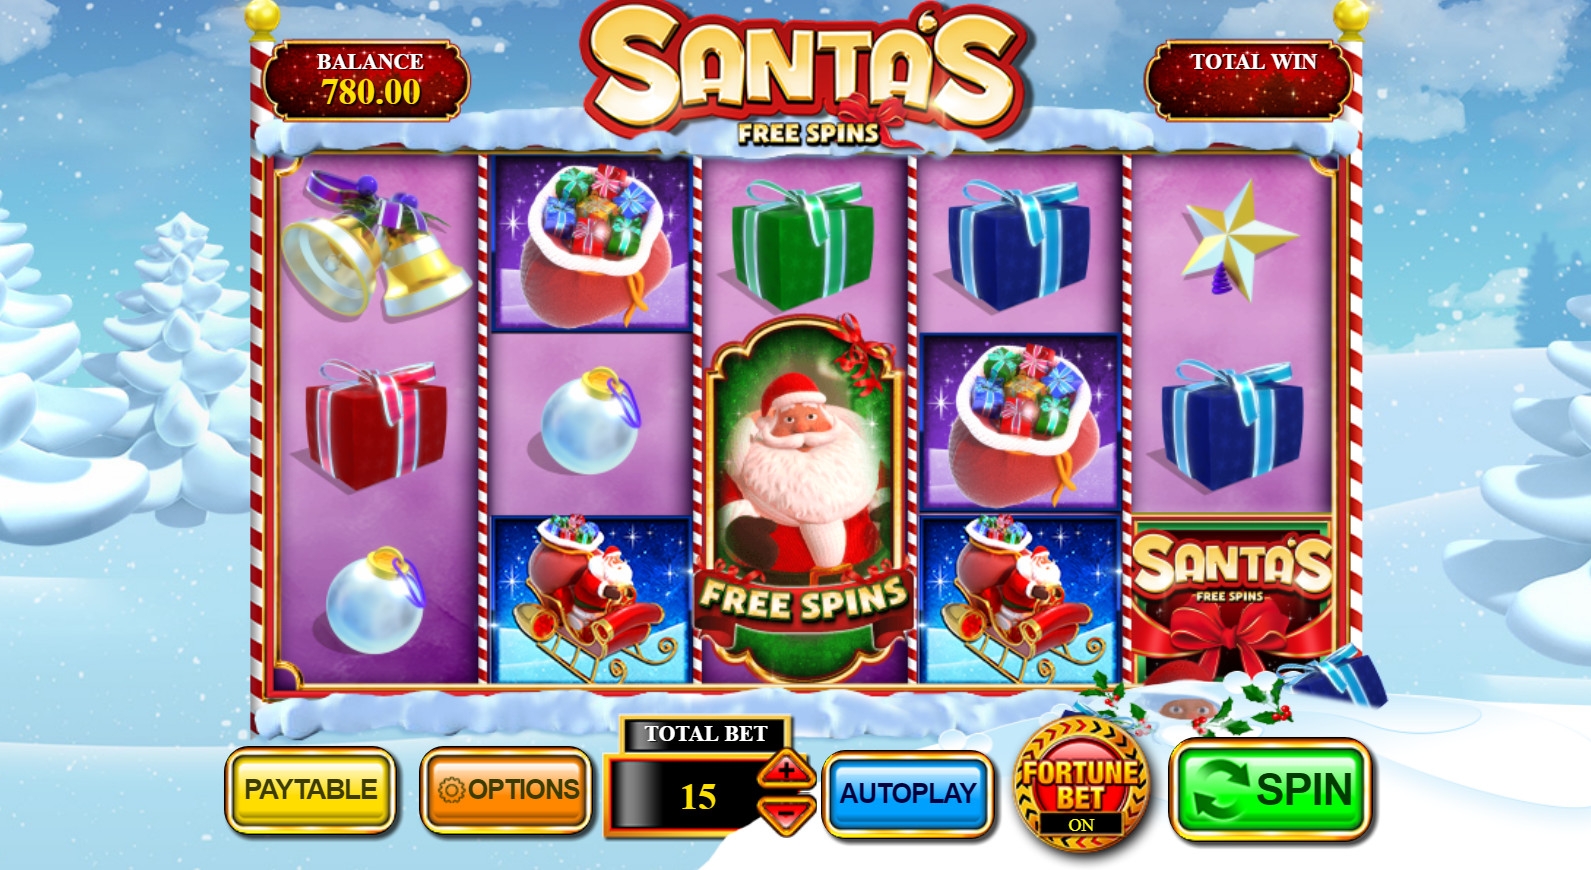 Santa’s Free Spins (Santa’s Free Spins) from category Slots